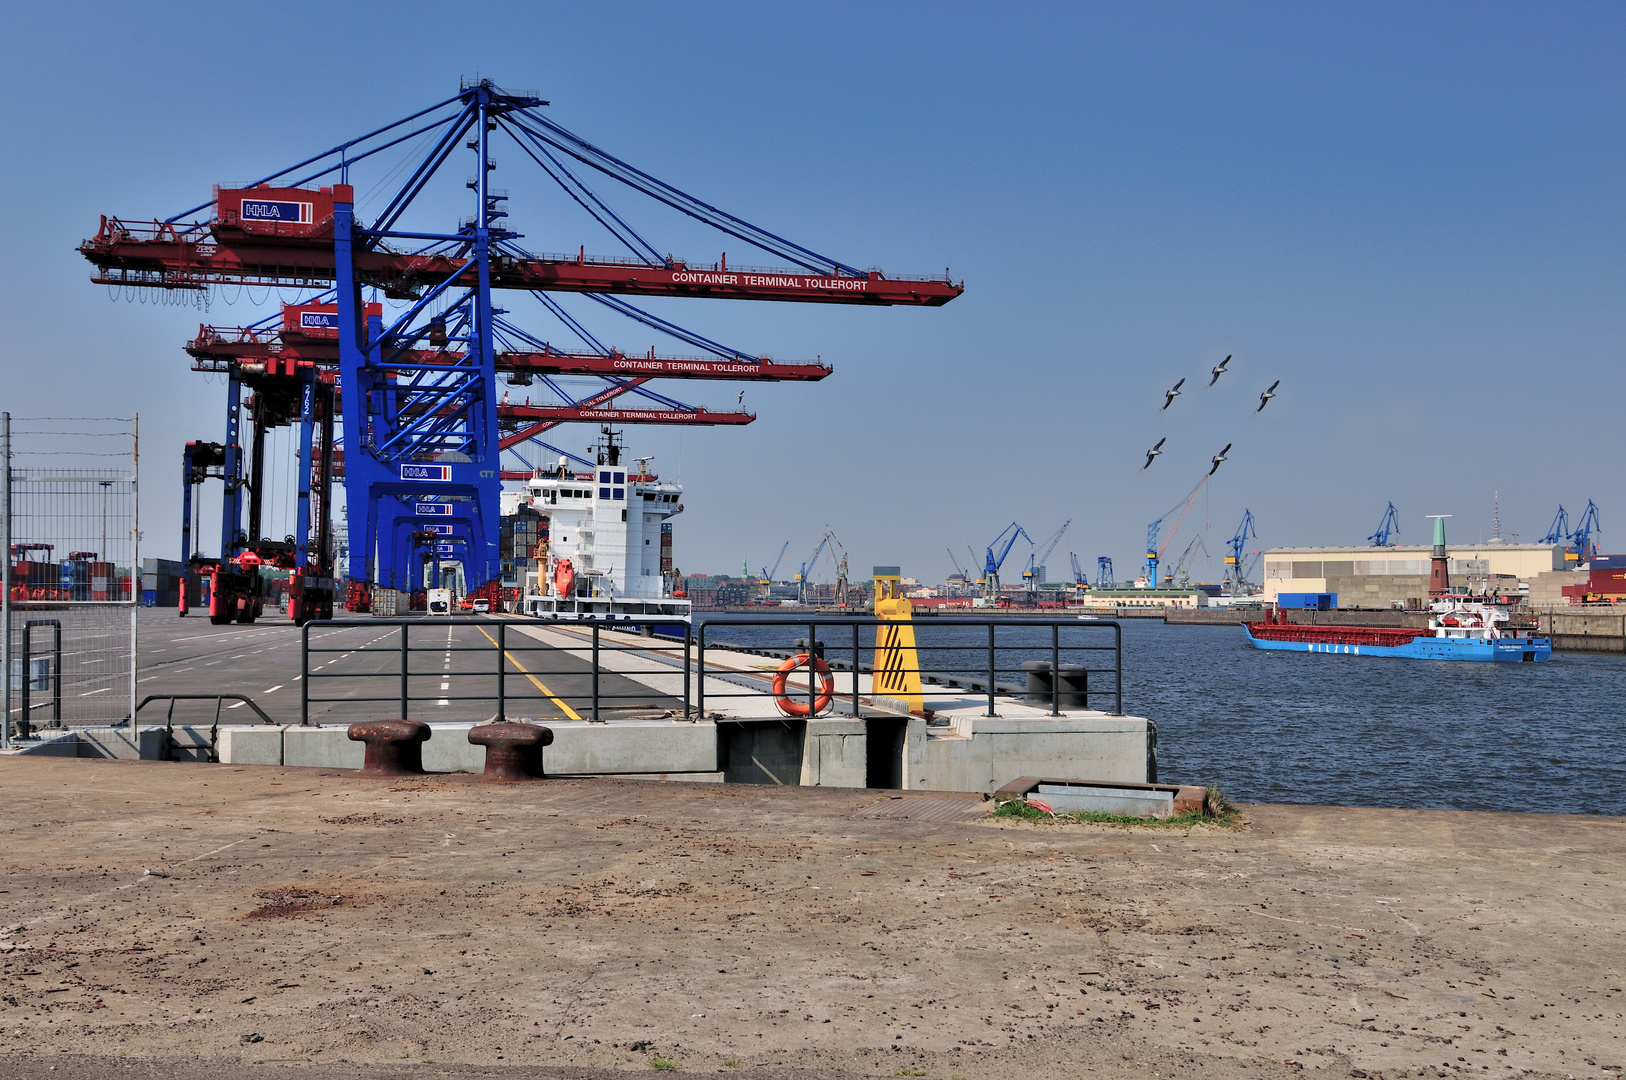 Erweiterung des Containerterminals Tollerort .